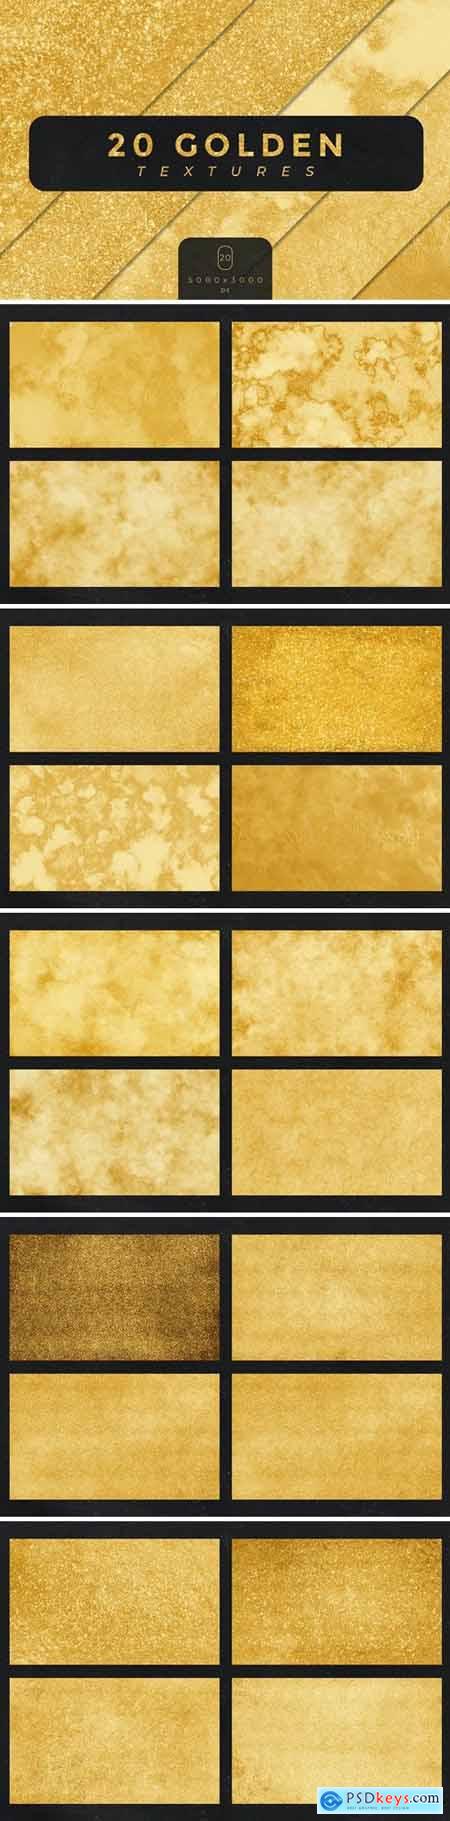 20 Golden Textures